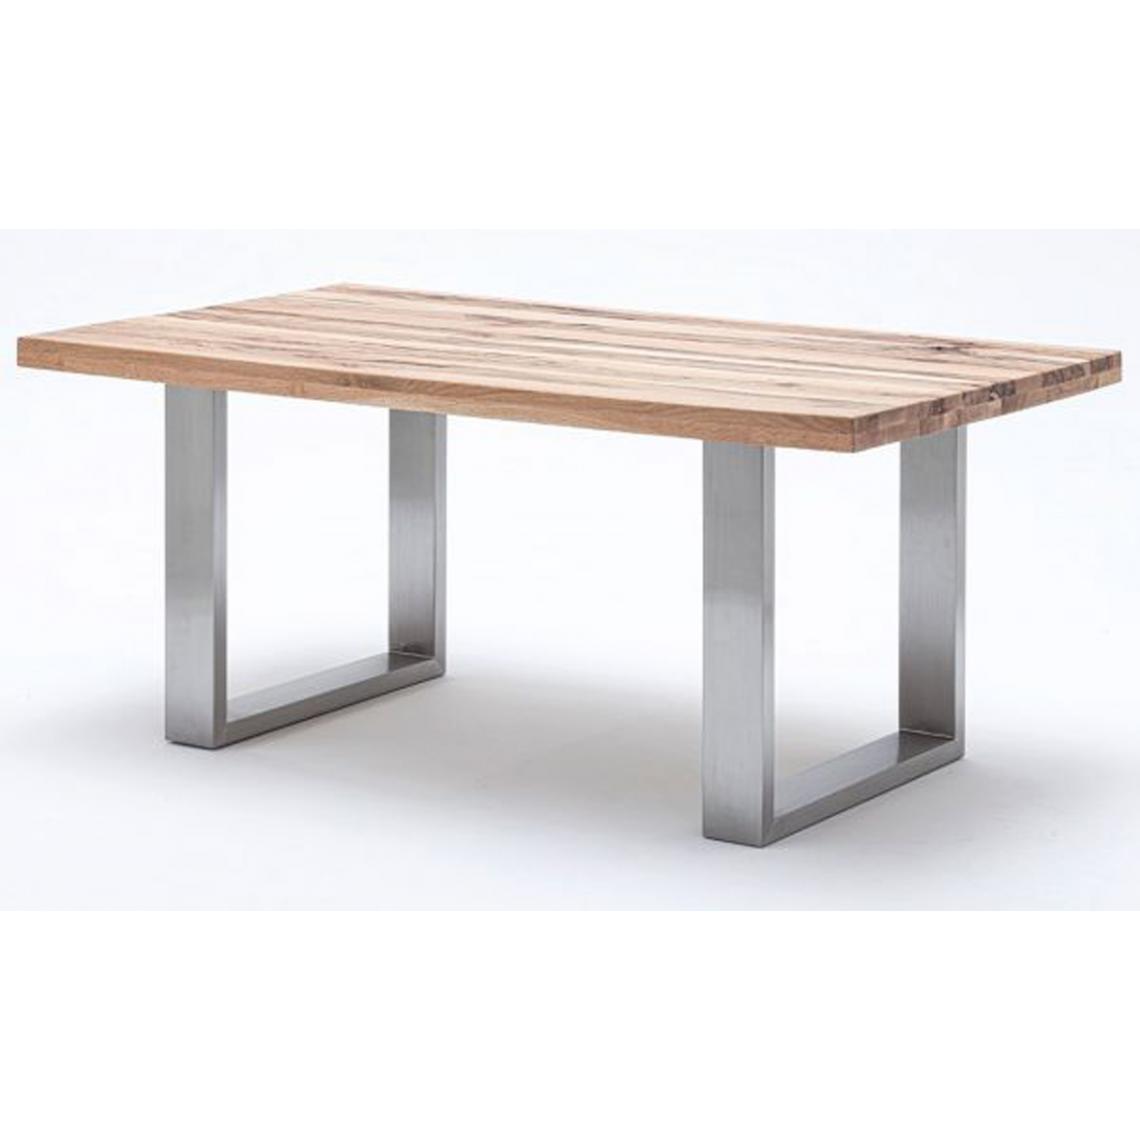 Pegane - Table à manger en chêne sauvage, laqué mat massif - L.240 x H.76 x P.100 cm -PEGANE- - Tables à manger